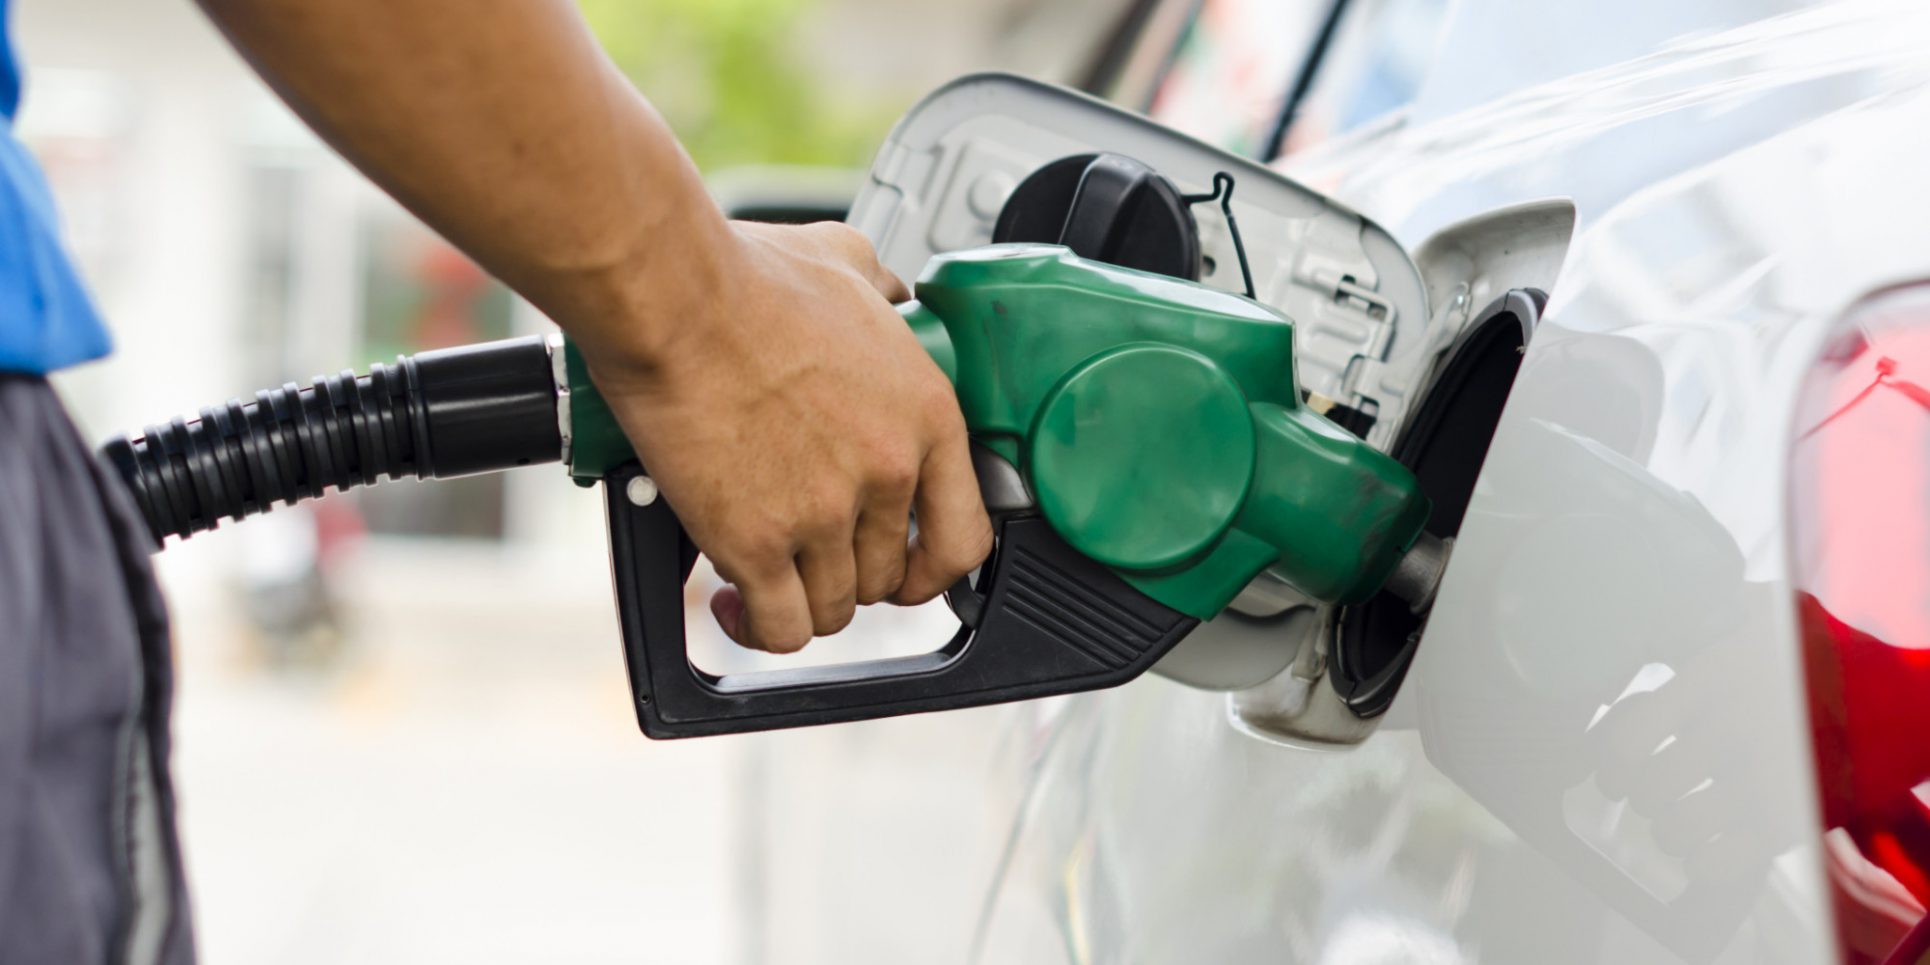 Gobierno anunciará nuevo plan para gasolina con etanol “en pocos días”